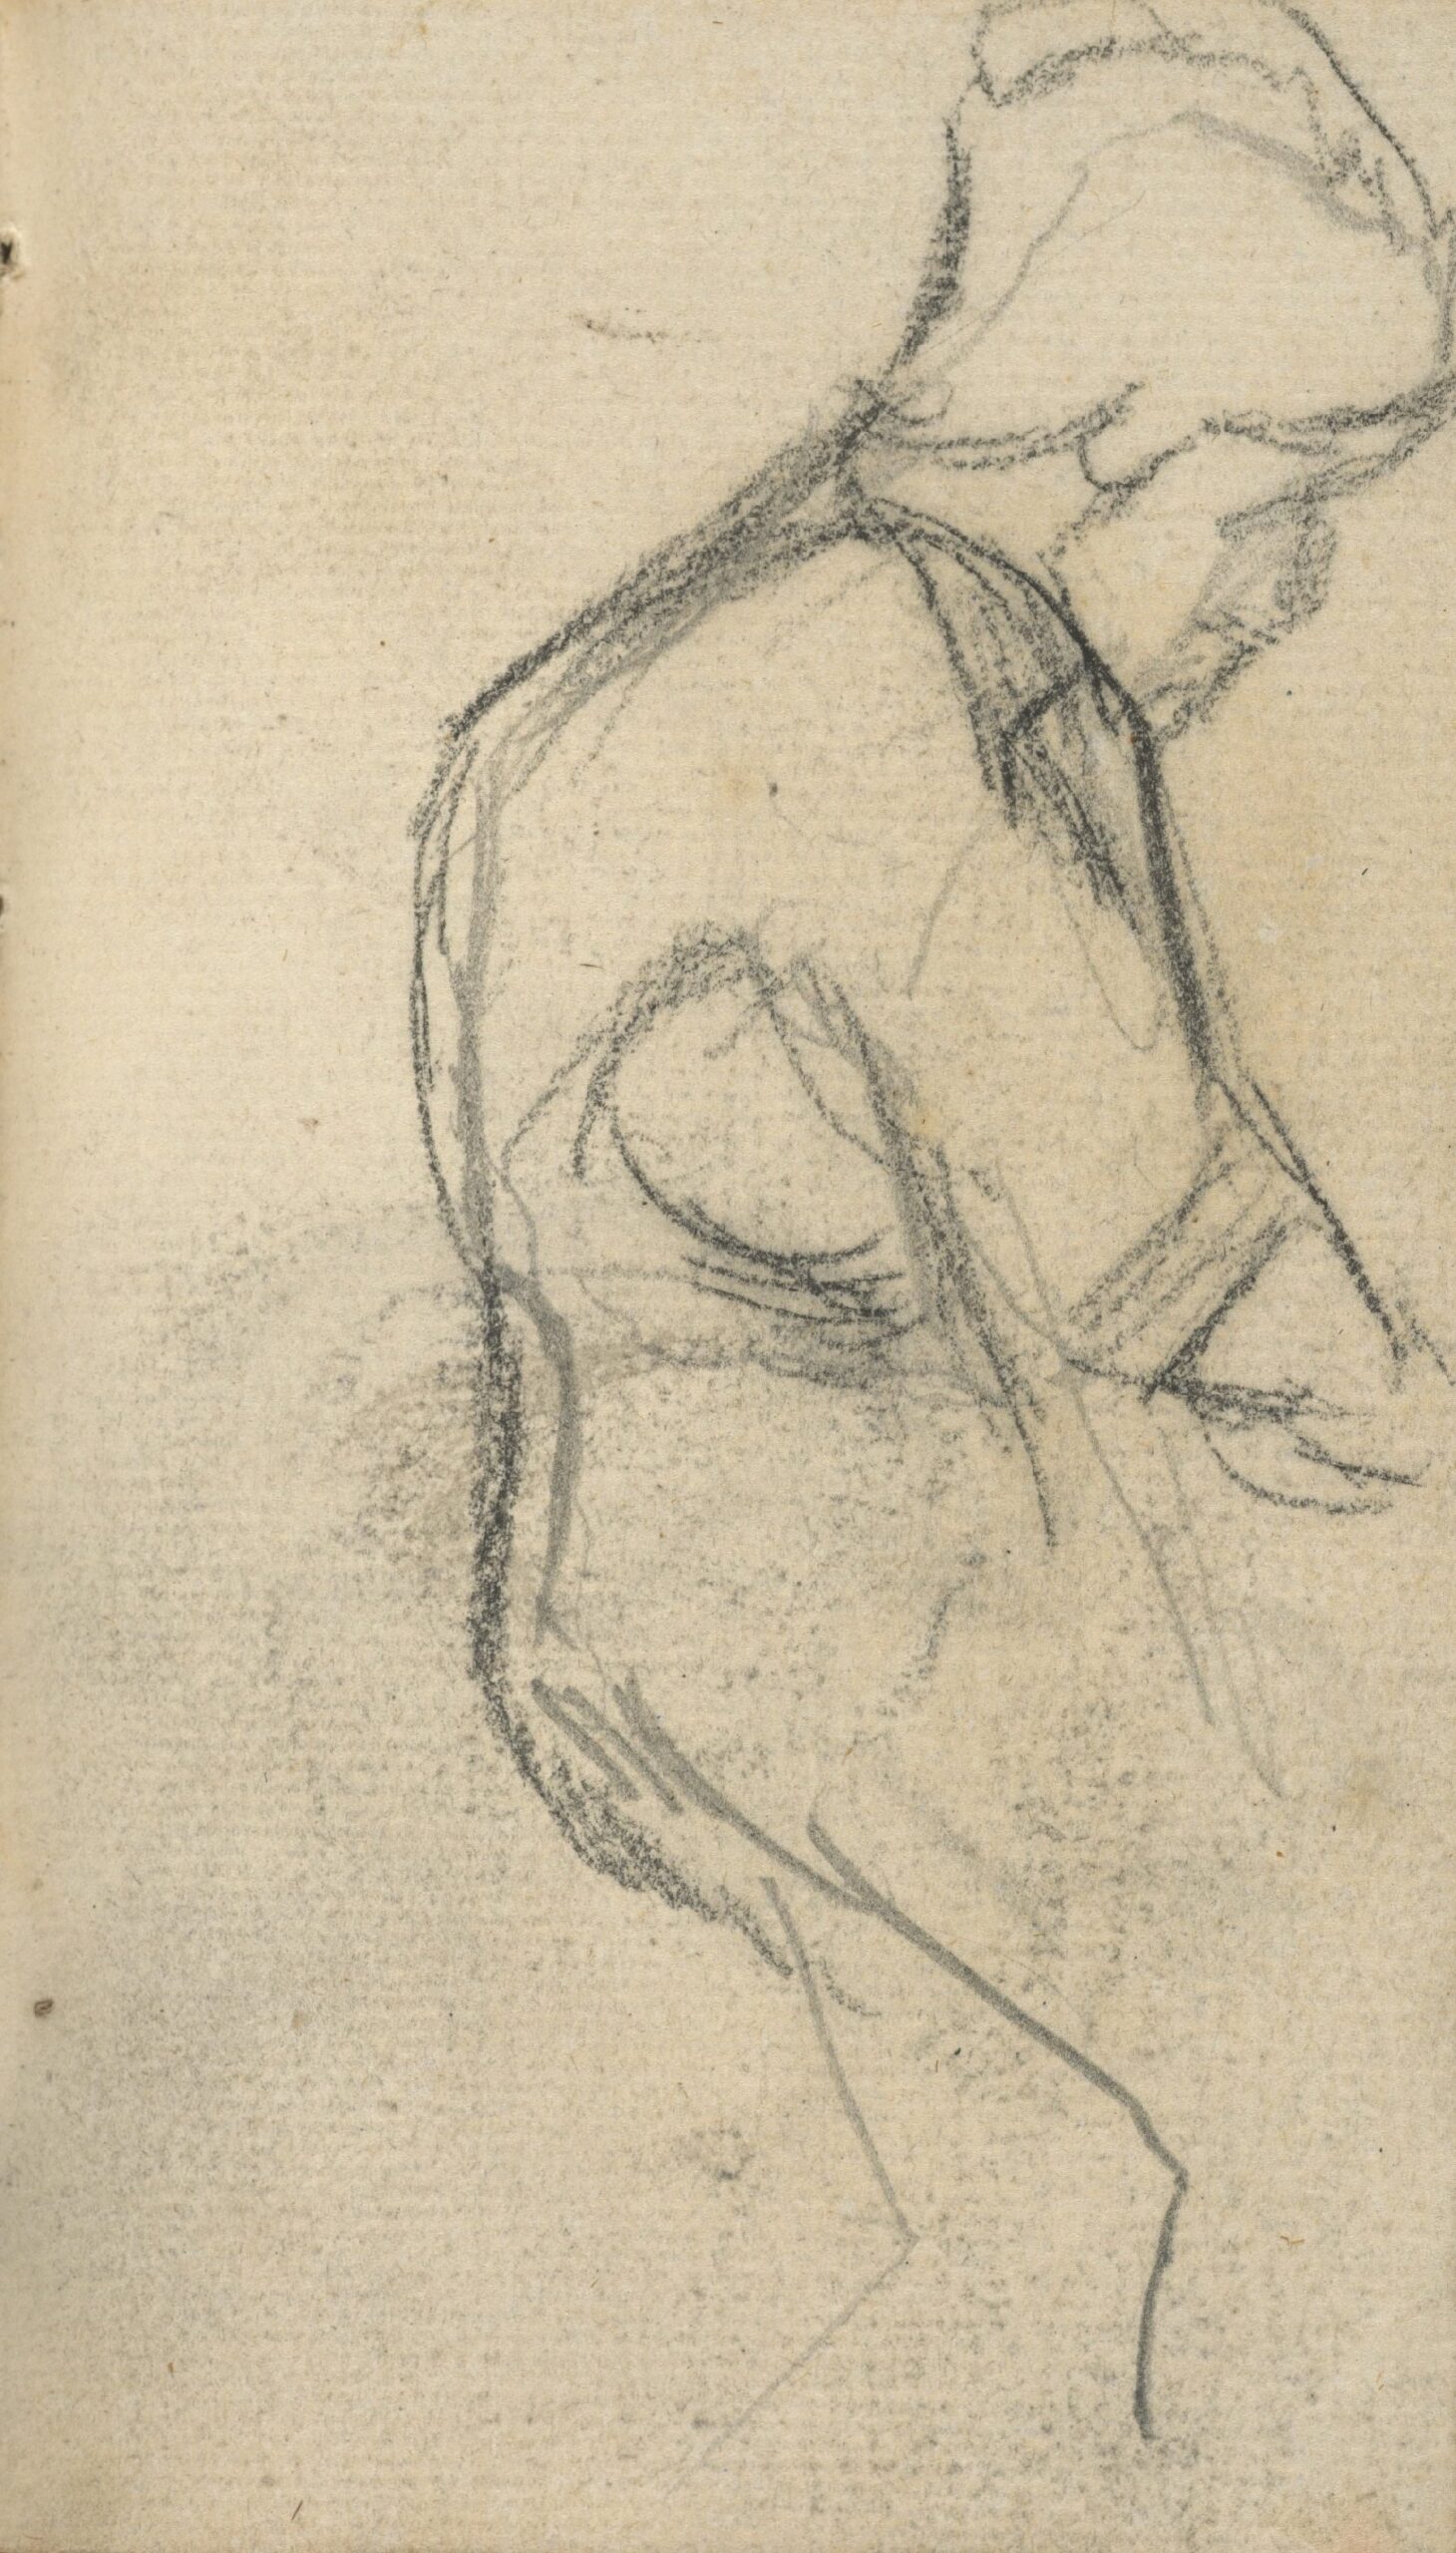 Vrouwenfiguur Vincent van Gogh (1853 - 1890), Nuenen, november 1884-september 1885